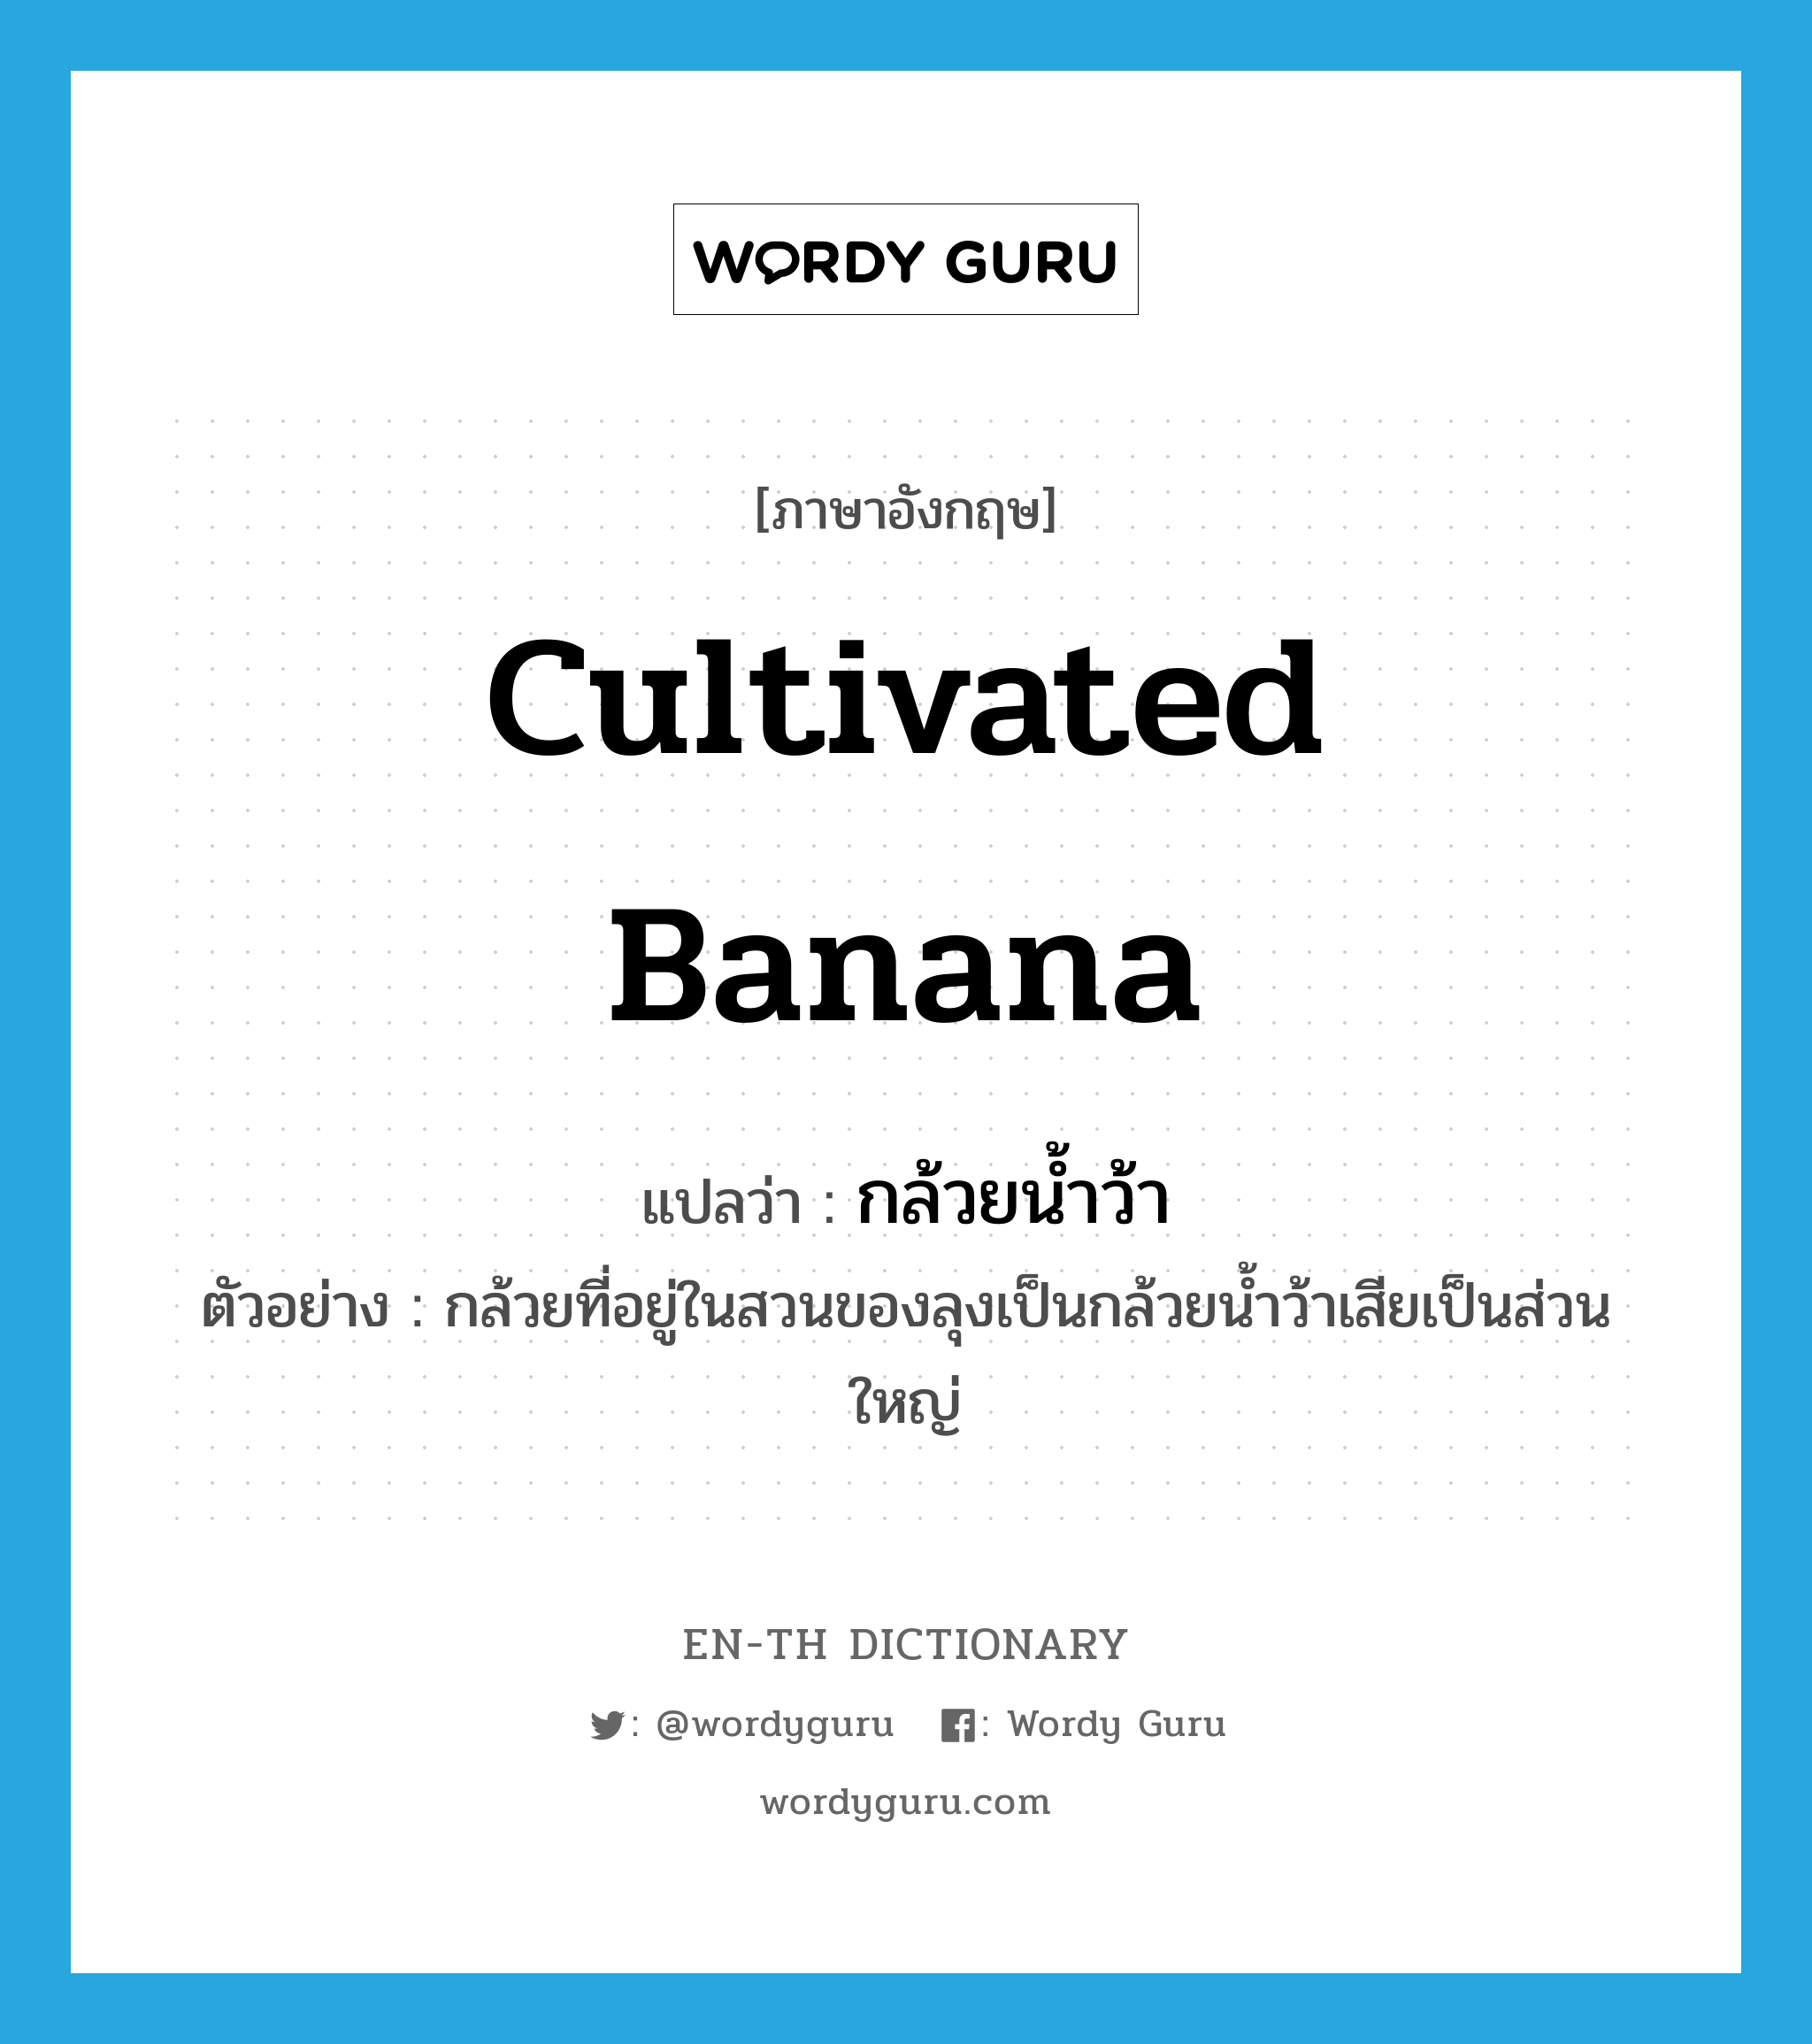 Cultivated banana แปลว่า?, คำศัพท์ภาษาอังกฤษ Cultivated banana แปลว่า กล้วยน้ำว้า ประเภท N ตัวอย่าง กล้วยที่อยู่ในสวนของลุงเป็นกล้วยน้ำว้าเสียเป็นส่วนใหญ่ หมวด N